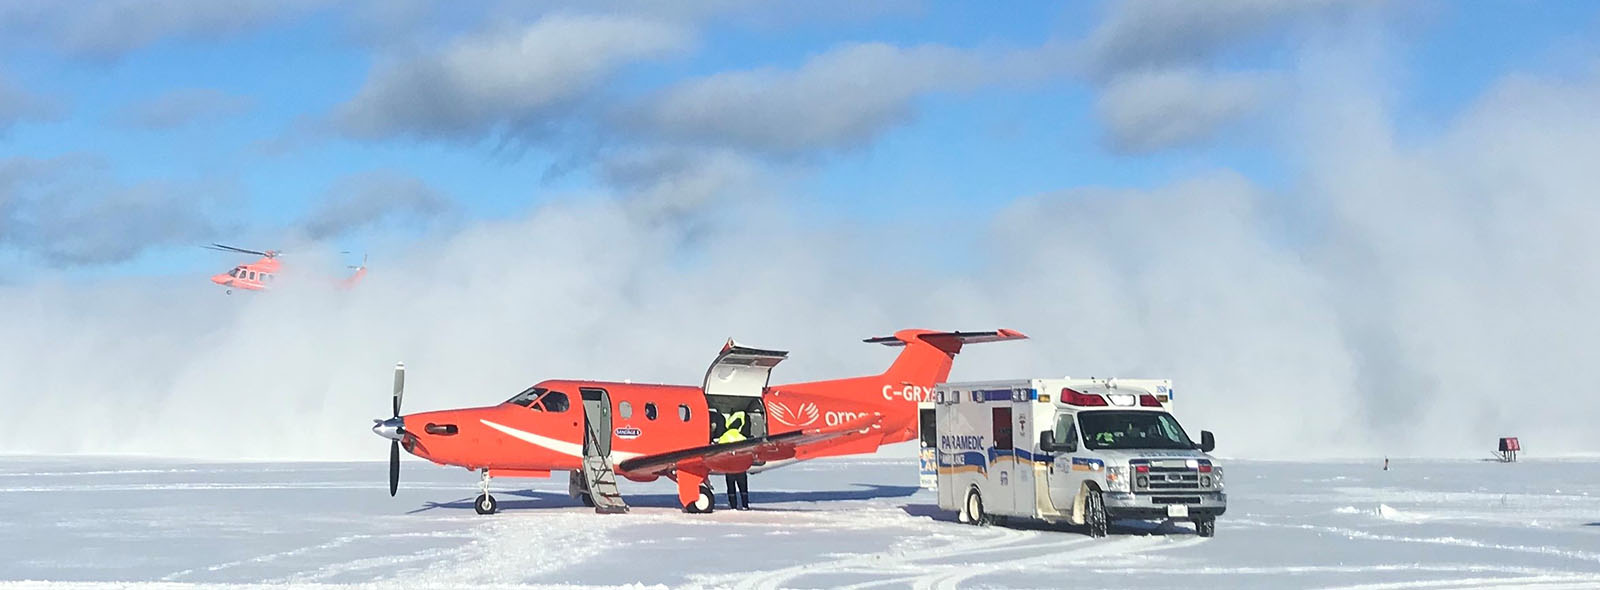  Un aéronef à voilure fixe Ornge acceptant un patient du service paramédical Simcoe et un hélicoptère atterrissant en arrière-plan.